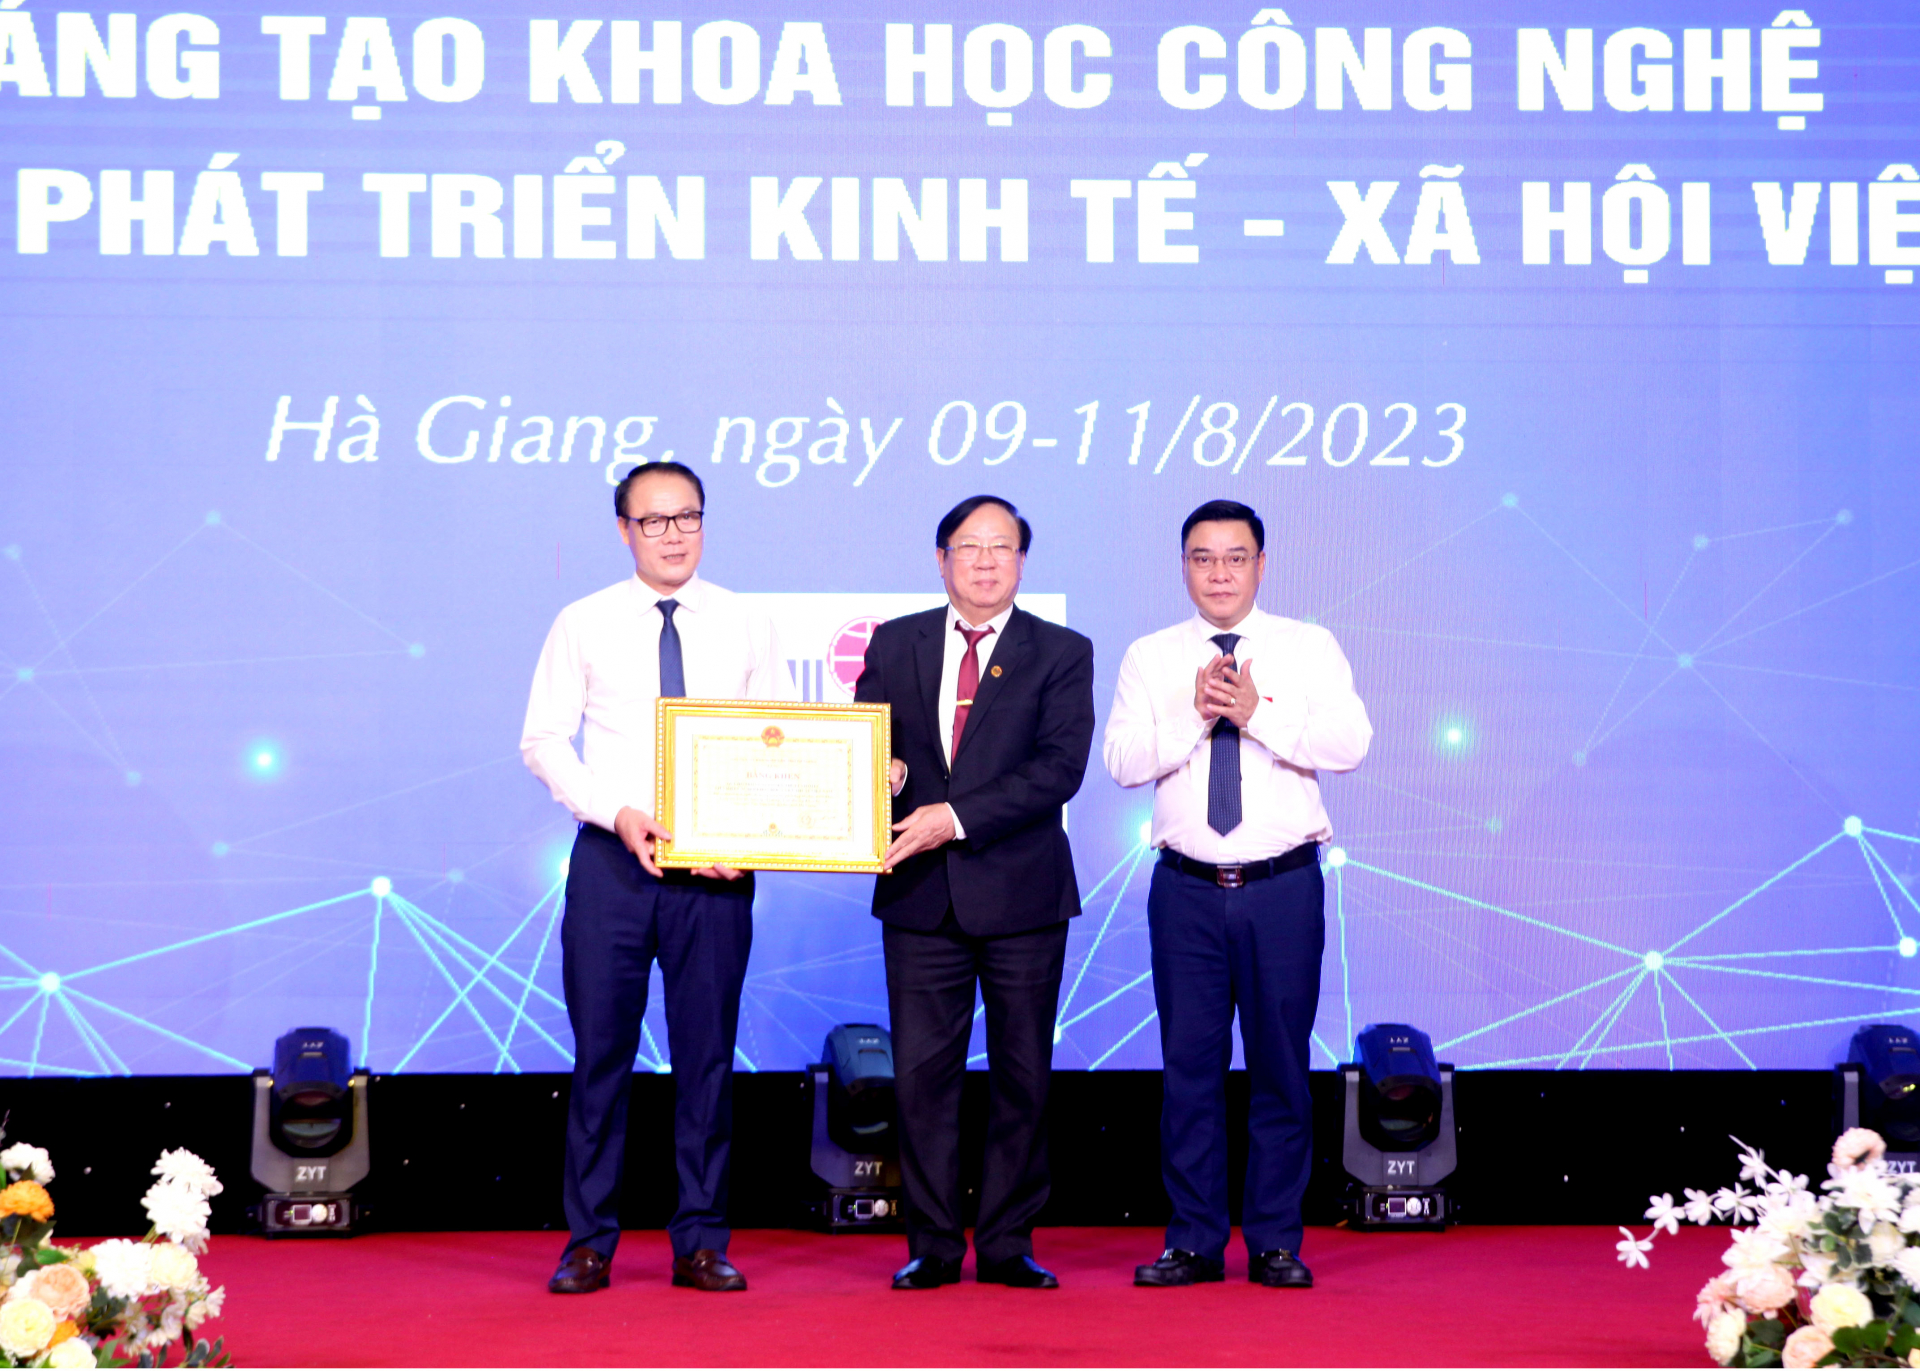 Lãnh đạo UBND tỉnh tặng Bằng khen cho Quỹ Hỗ trợ Sáng tạo kỹ thuật VIFOTEC, Liên hiệp các hội Khoa học và Kỹ thuật Việt Nam.